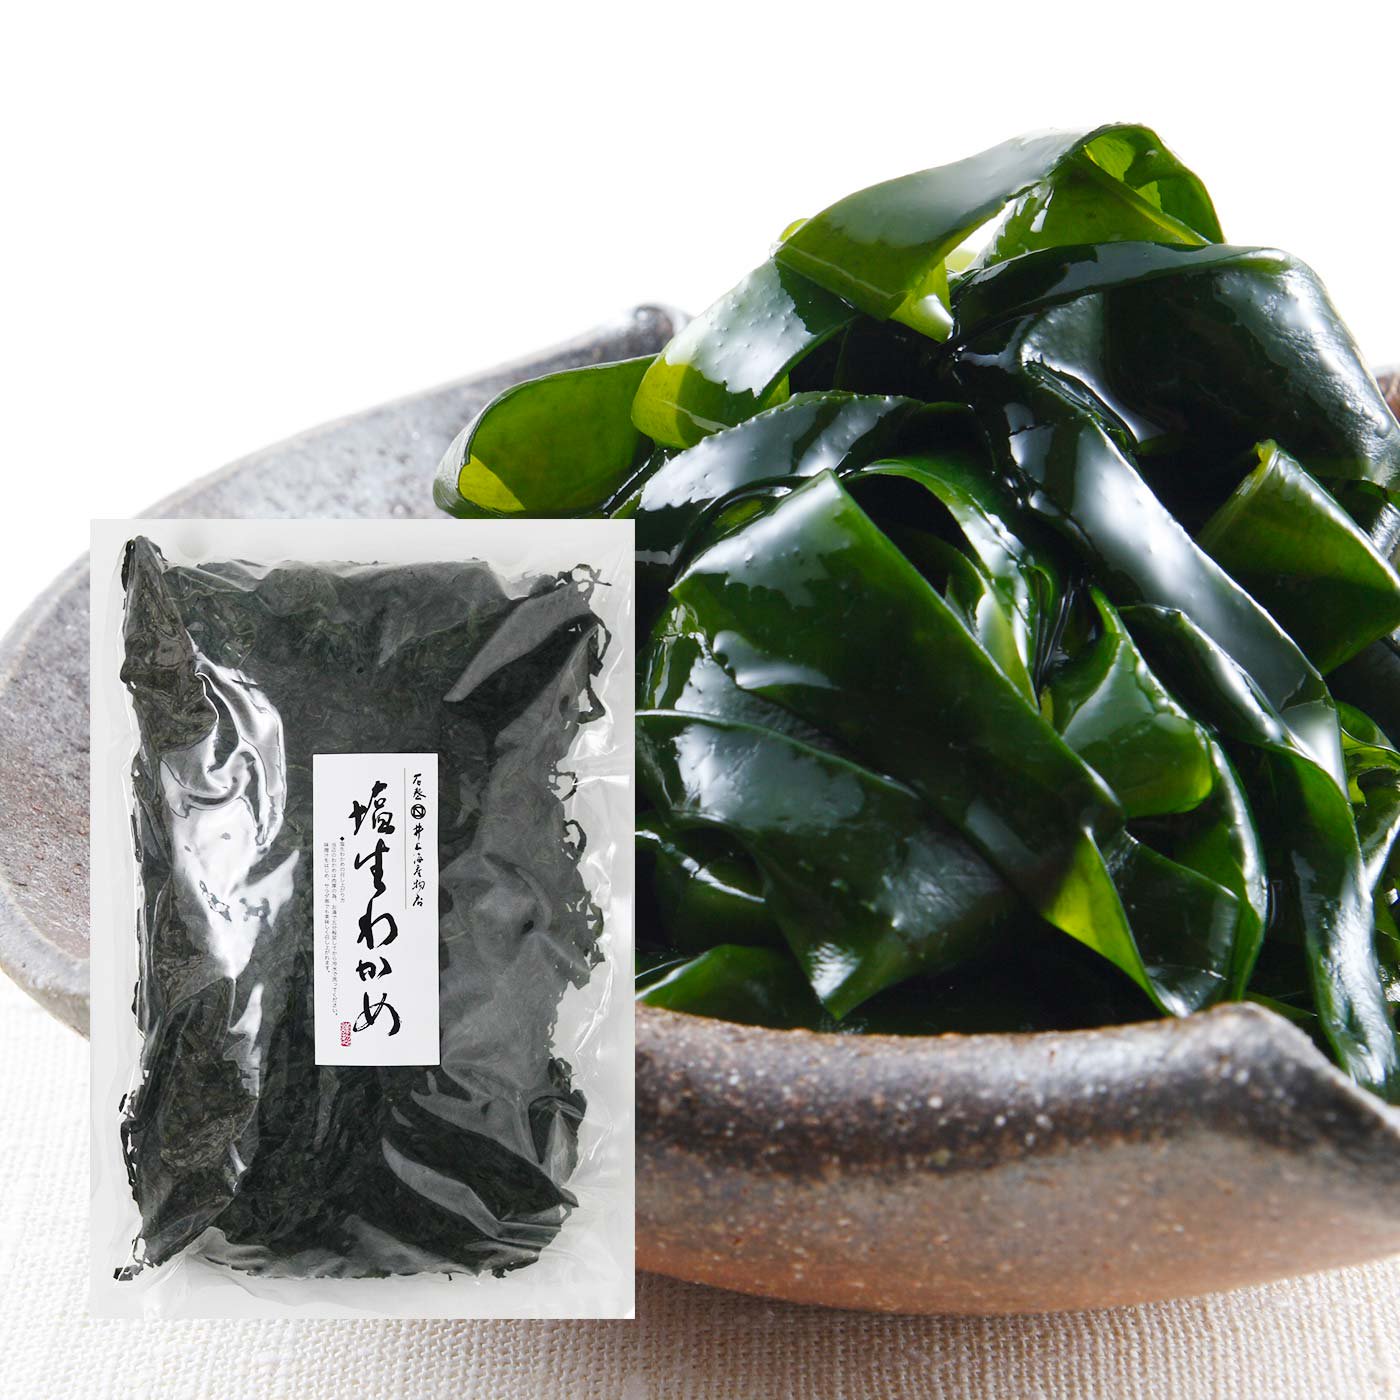 日高食品 韓国産カットわかめ 200g×10袋 - 海藻類